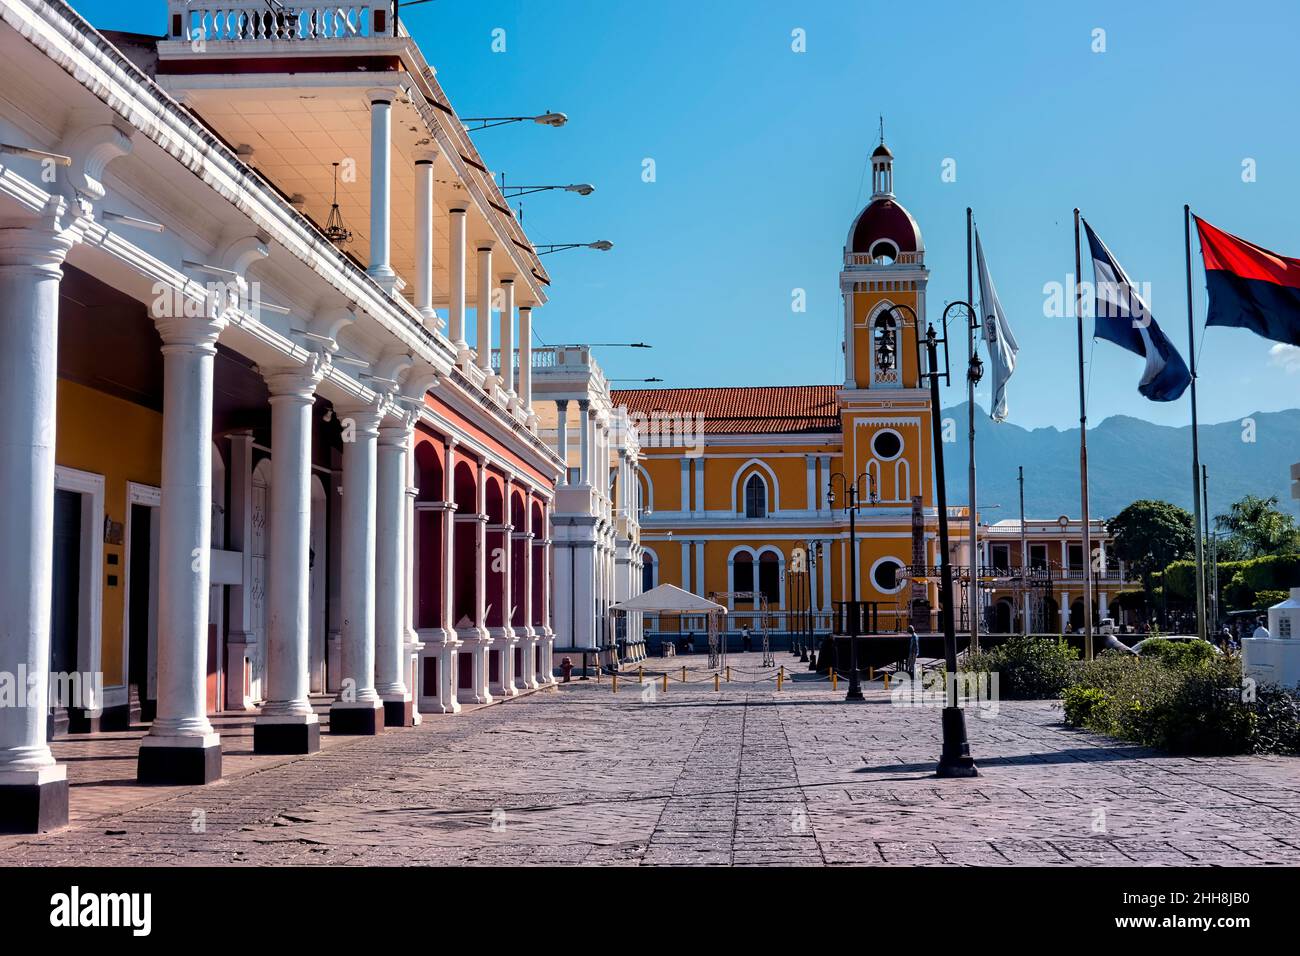 La belle cathédrale néoclassique de Grenade (notre Dame de l'Assomption), et la place centrale, Grenade, Nicaragua Banque D'Images